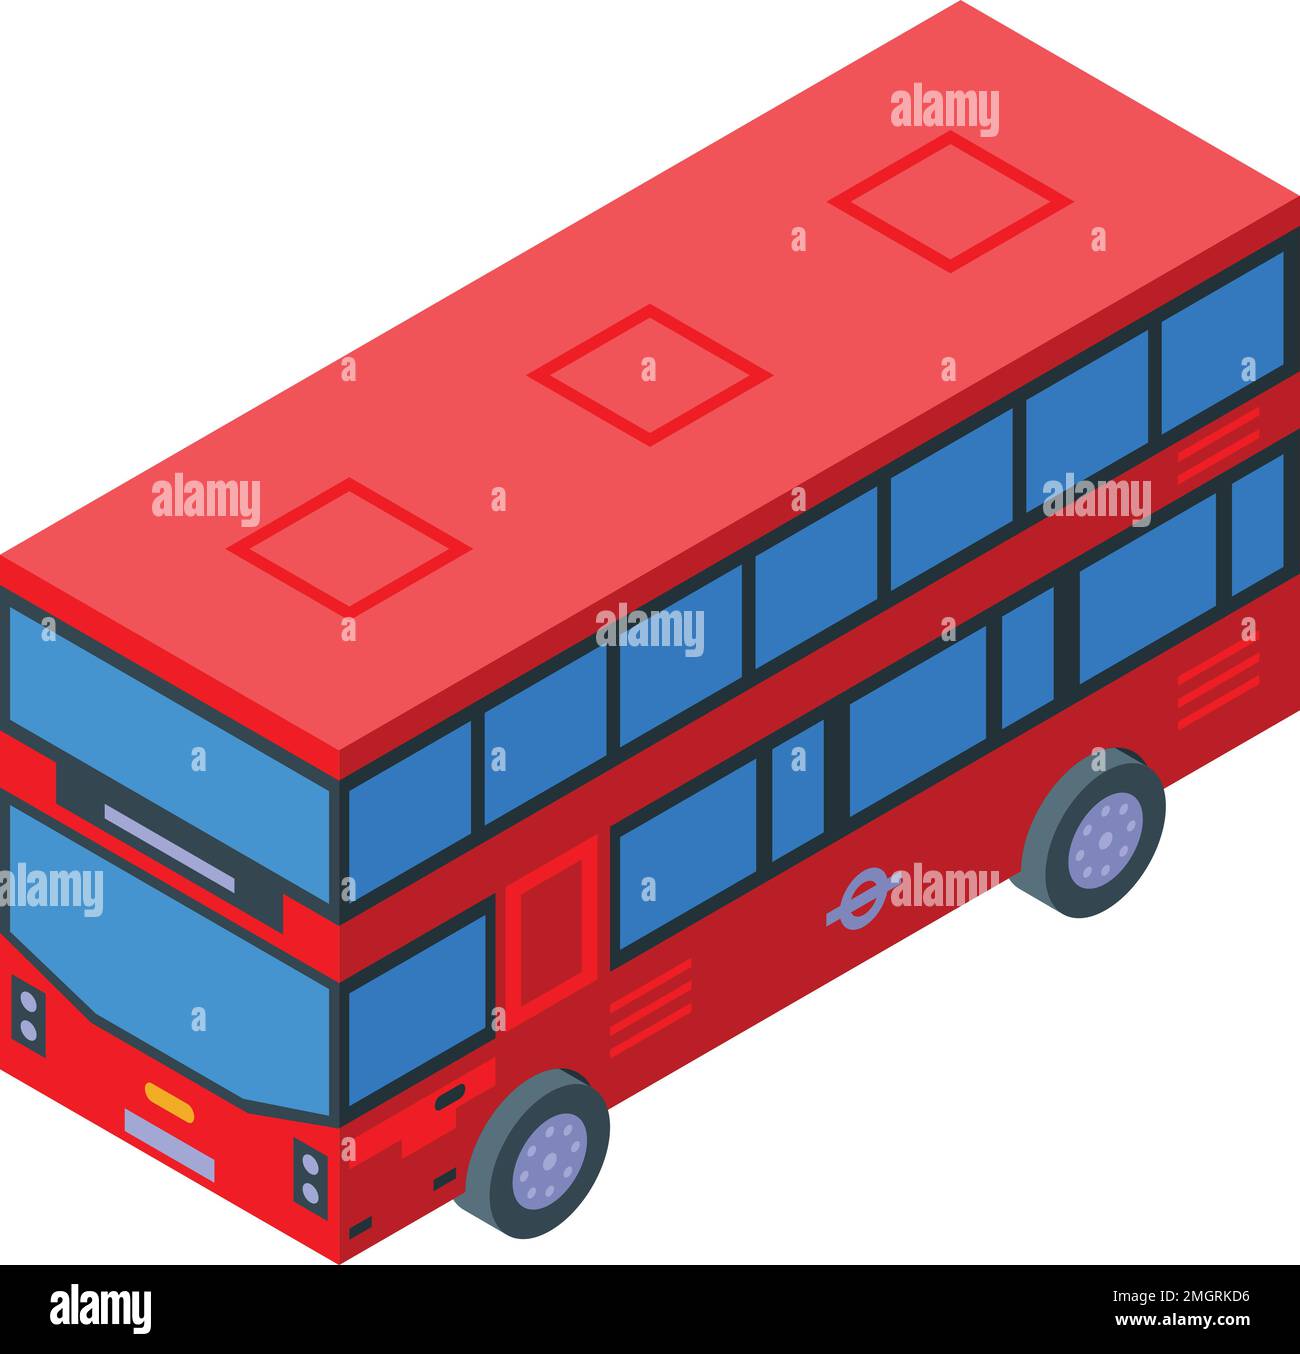 Mapper l'icône de bus rouge vecteur isométrique. Visite de l'Angleterre. Cabine conducteur Illustration de Vecteur